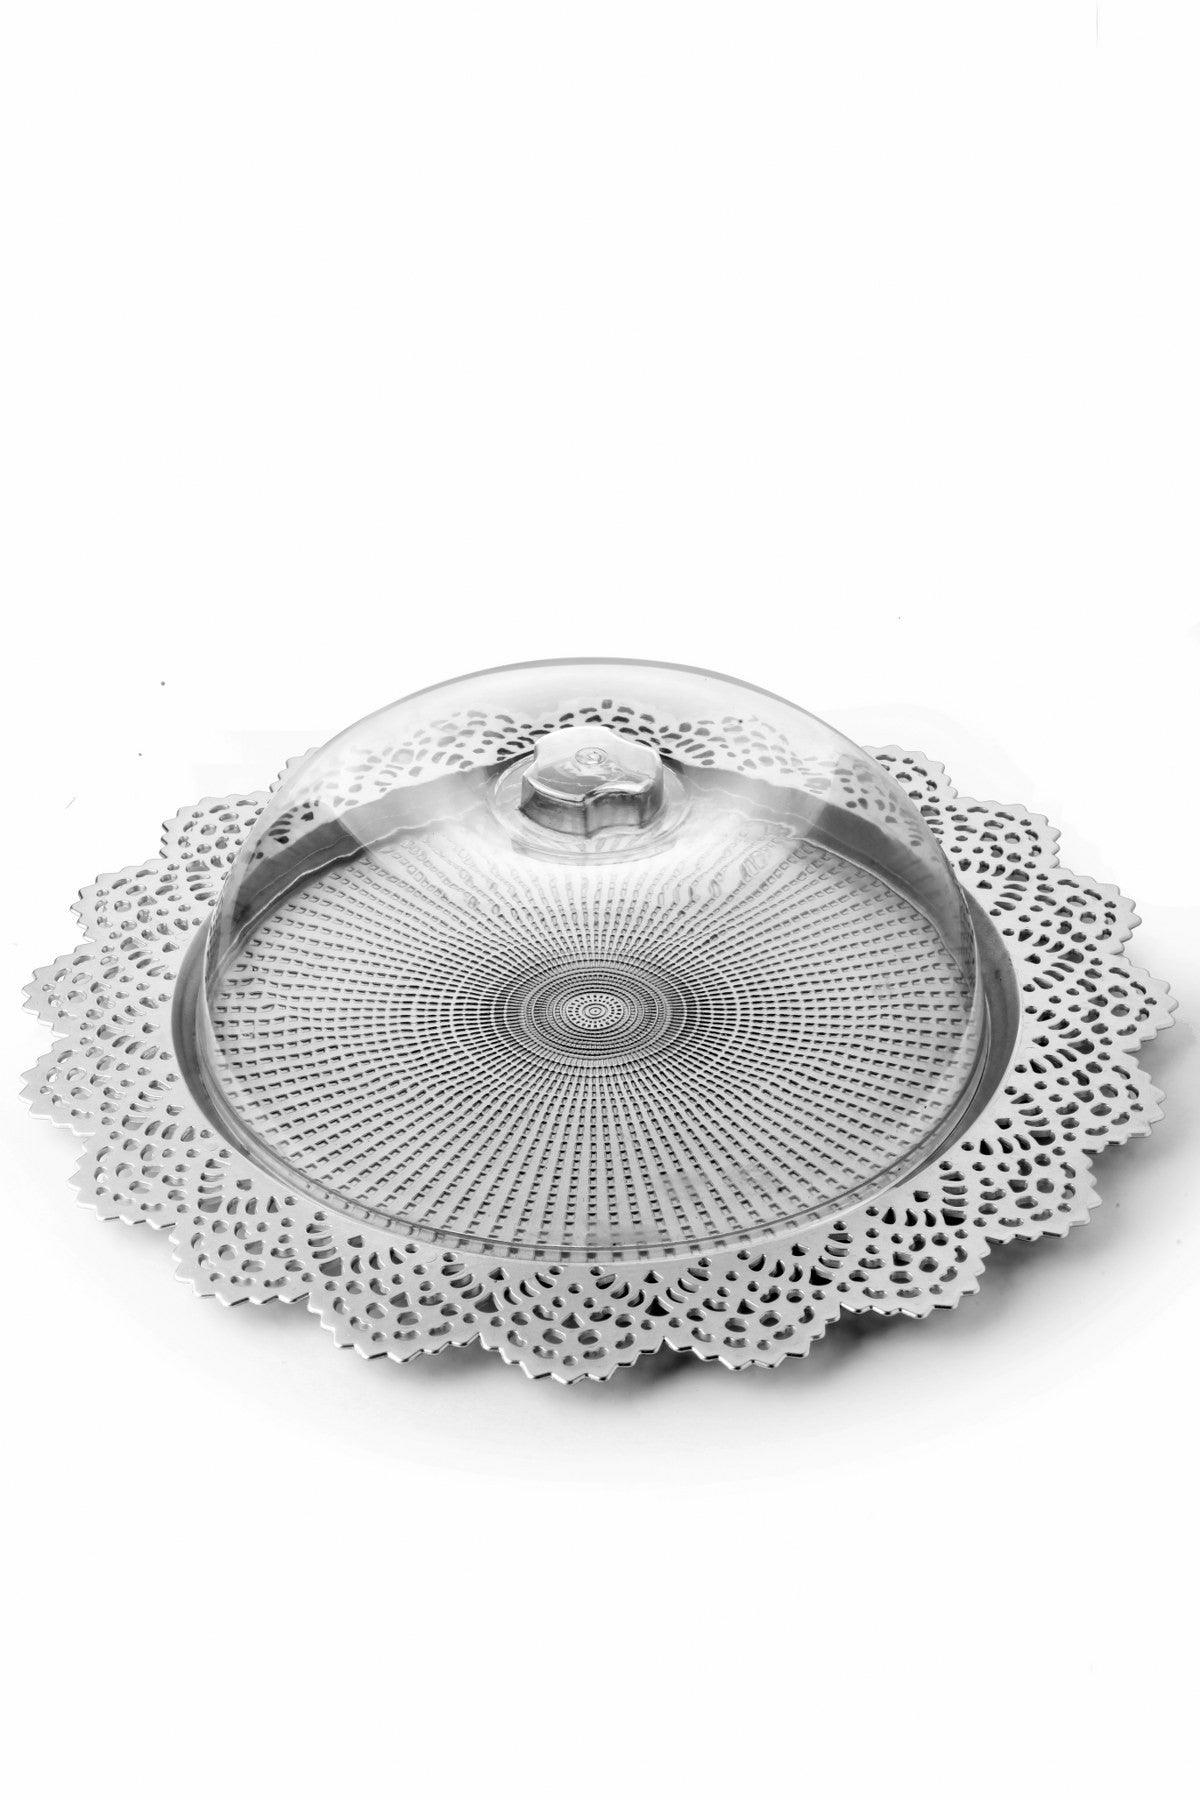 Tavă cu clopot Bell-shaped Plastic Jar MRTS - Silver, Argint, 38x10x38 cm